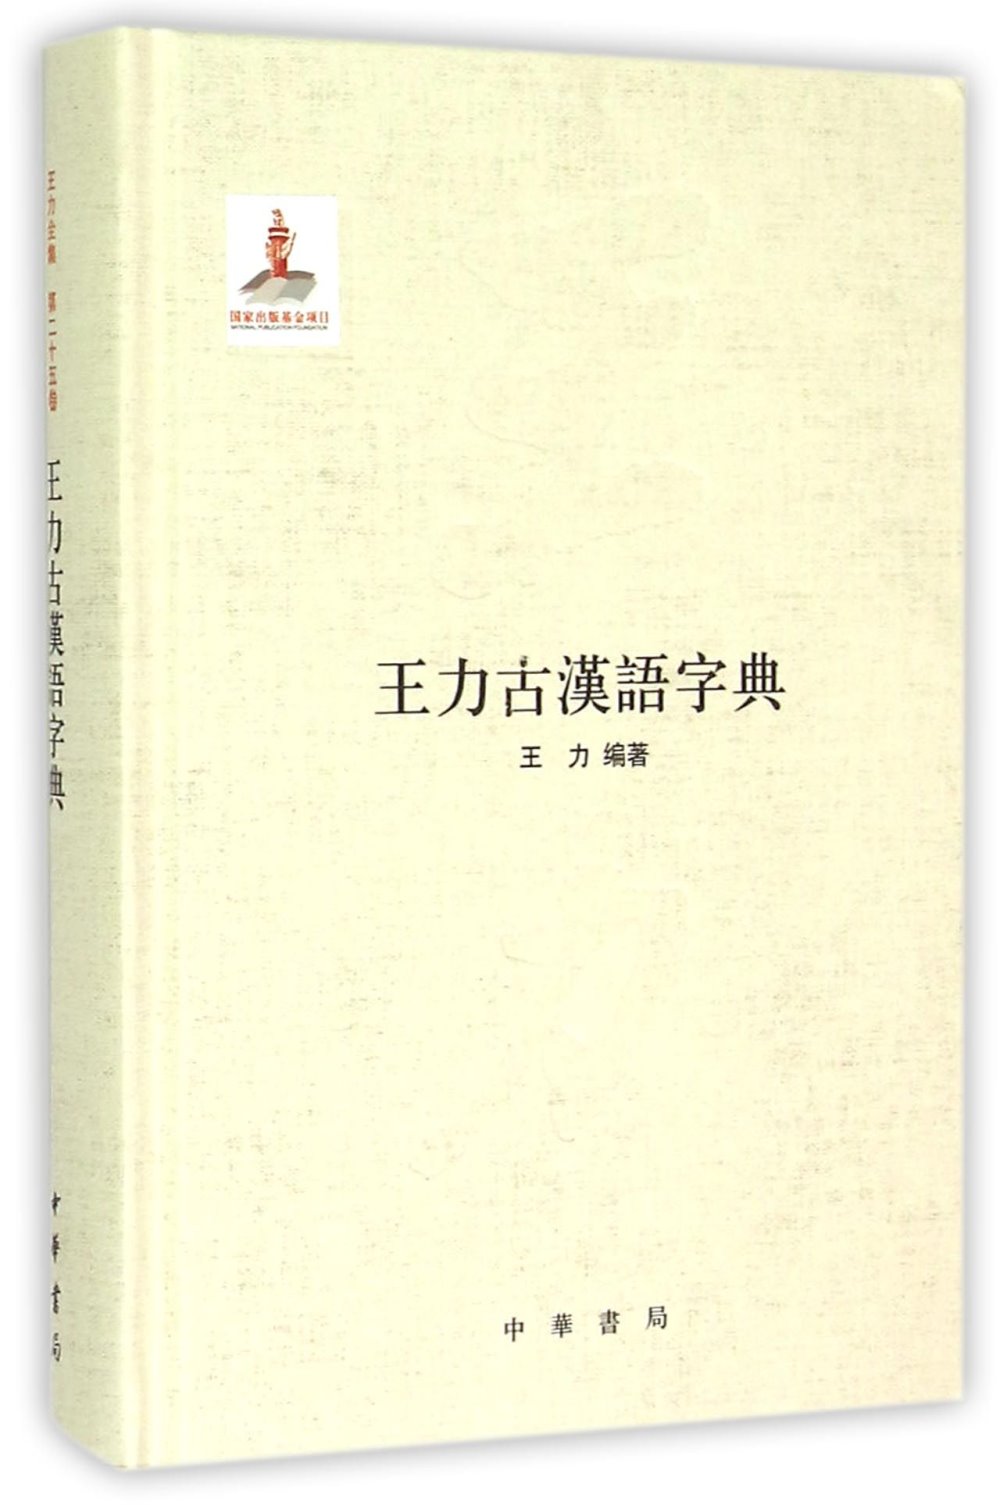 王力古漢語字典